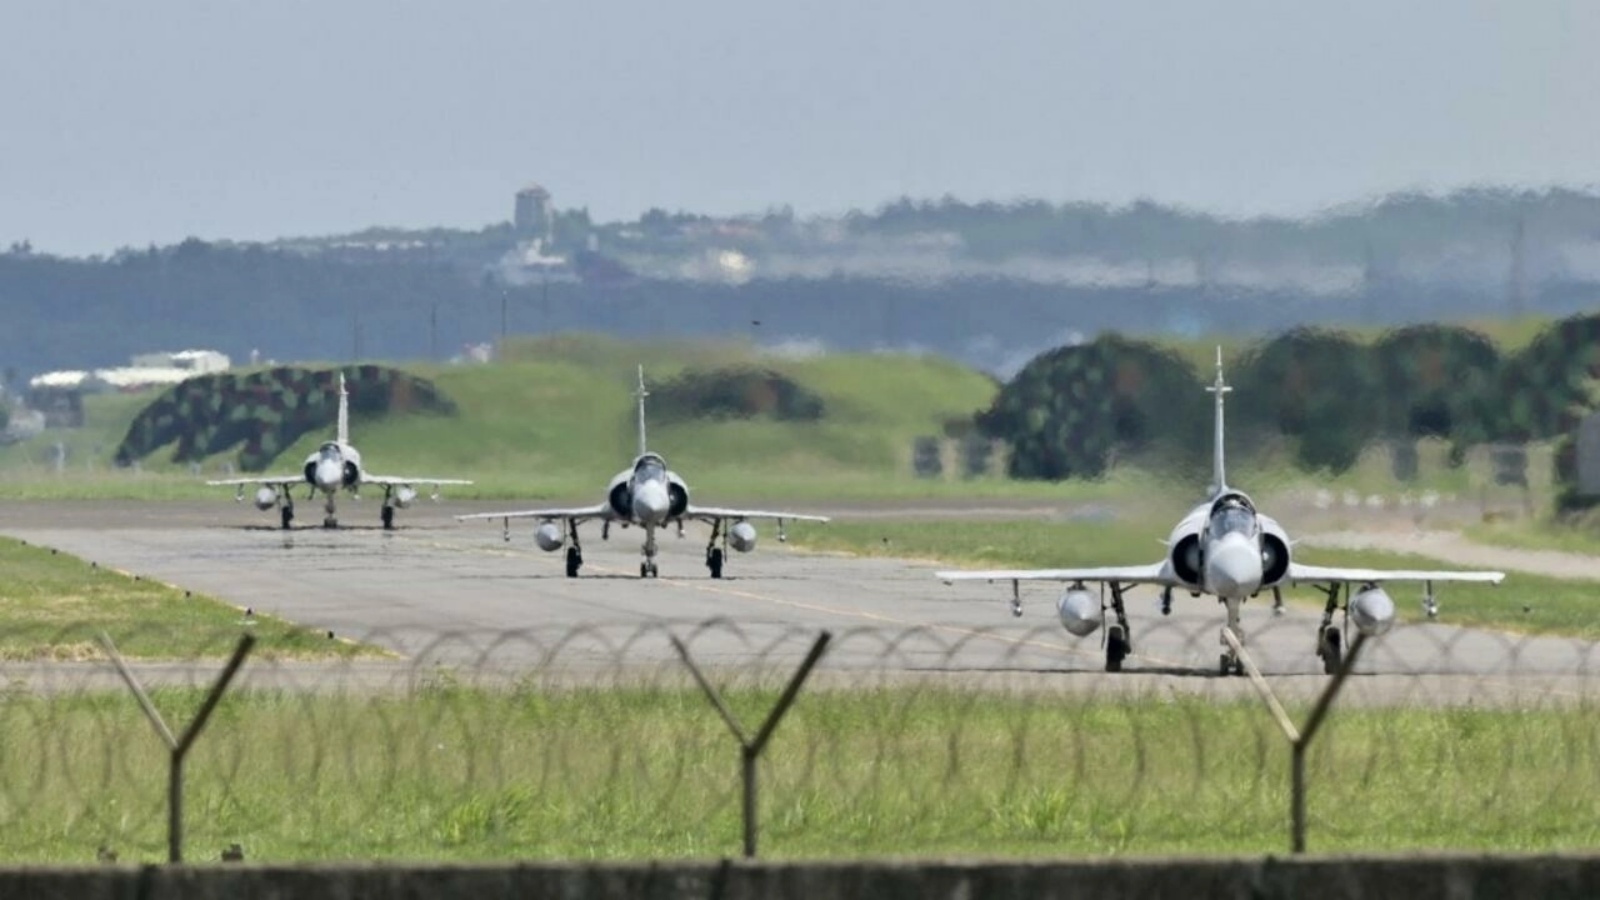 ثلاث طائرات مقاتلة فرنسية الصنع من طراز ميراج 2000 تاكسي على مدرج أمام حظيرة طائرات في قاعدة هسينشو الجوية في هسينشو، تايوان في 5 أغسطس 2022